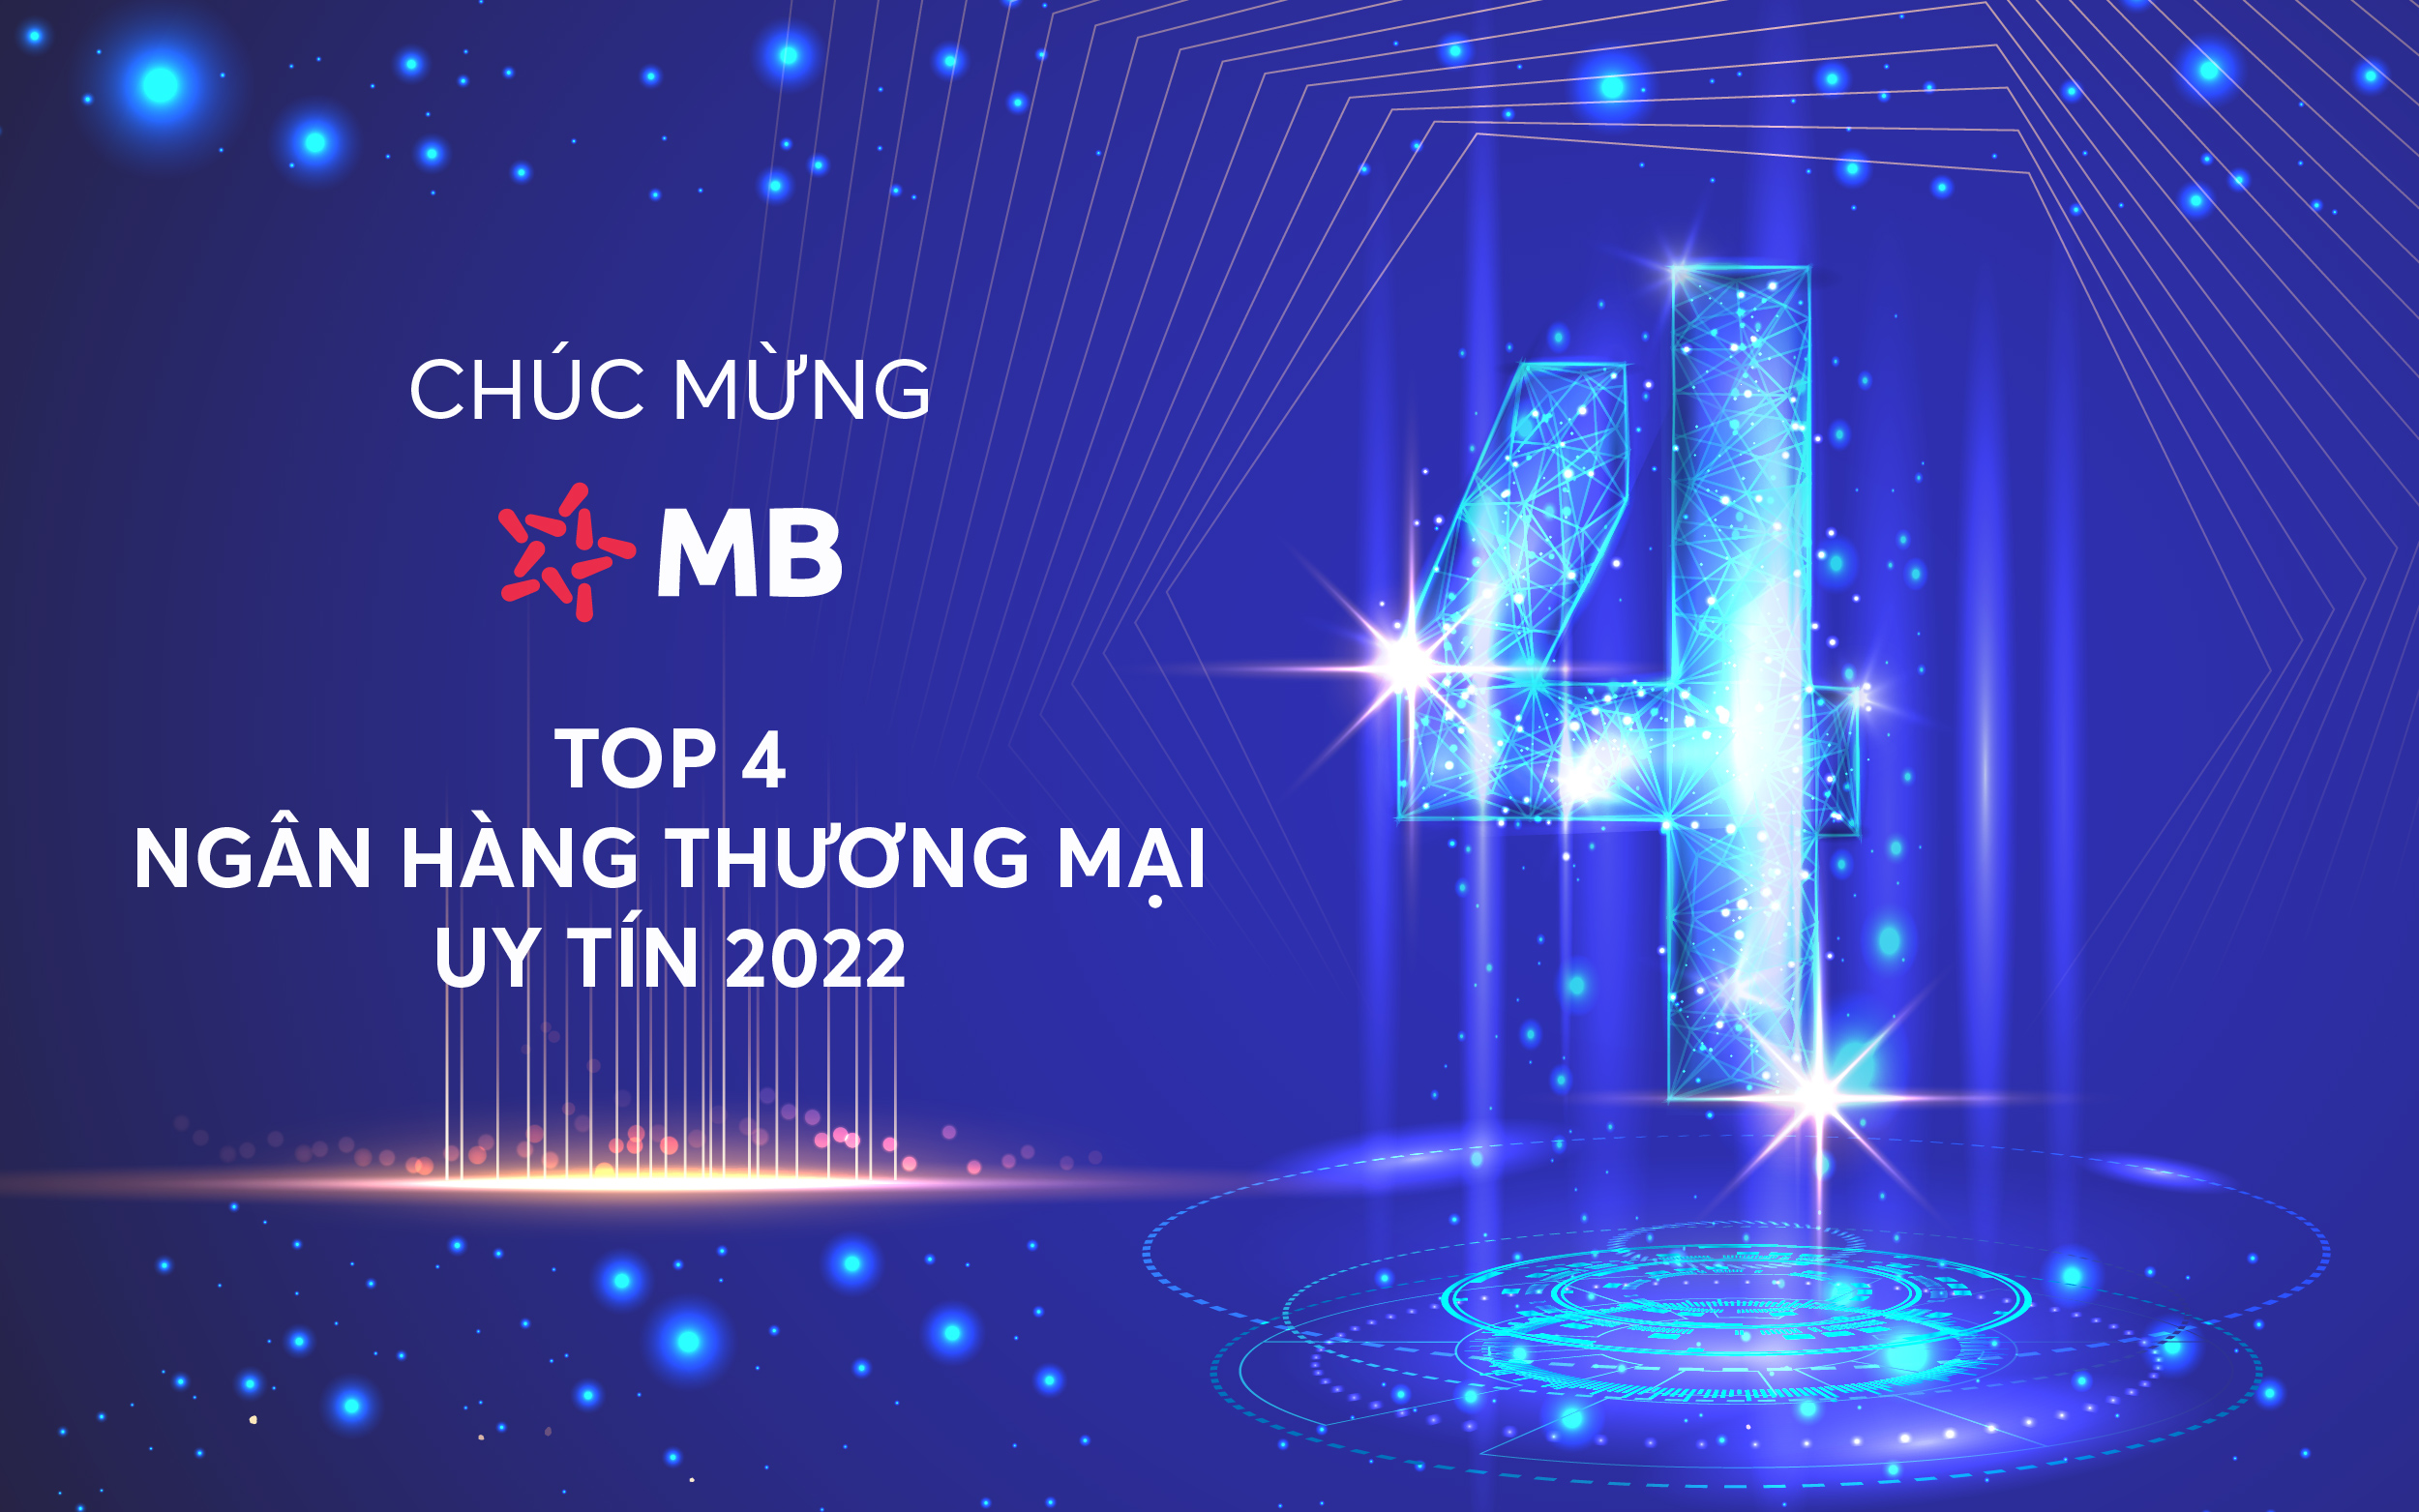 MB vào Top 4 ngân hàng thương mại uy tín Việt Nam 2022 - 1